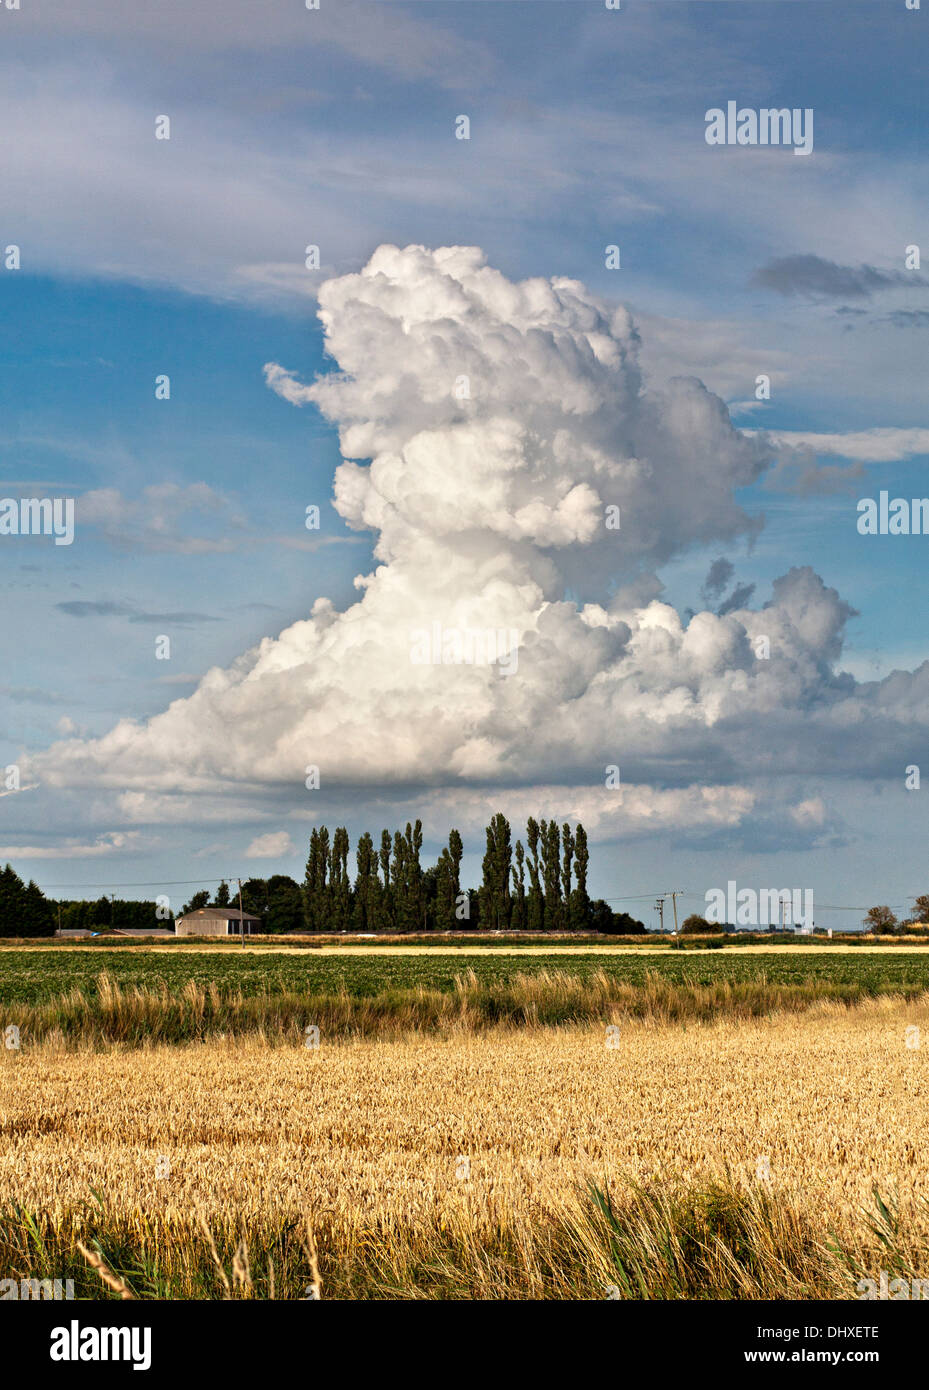 Towering cumulonimbus cloud formation. Stock Photo